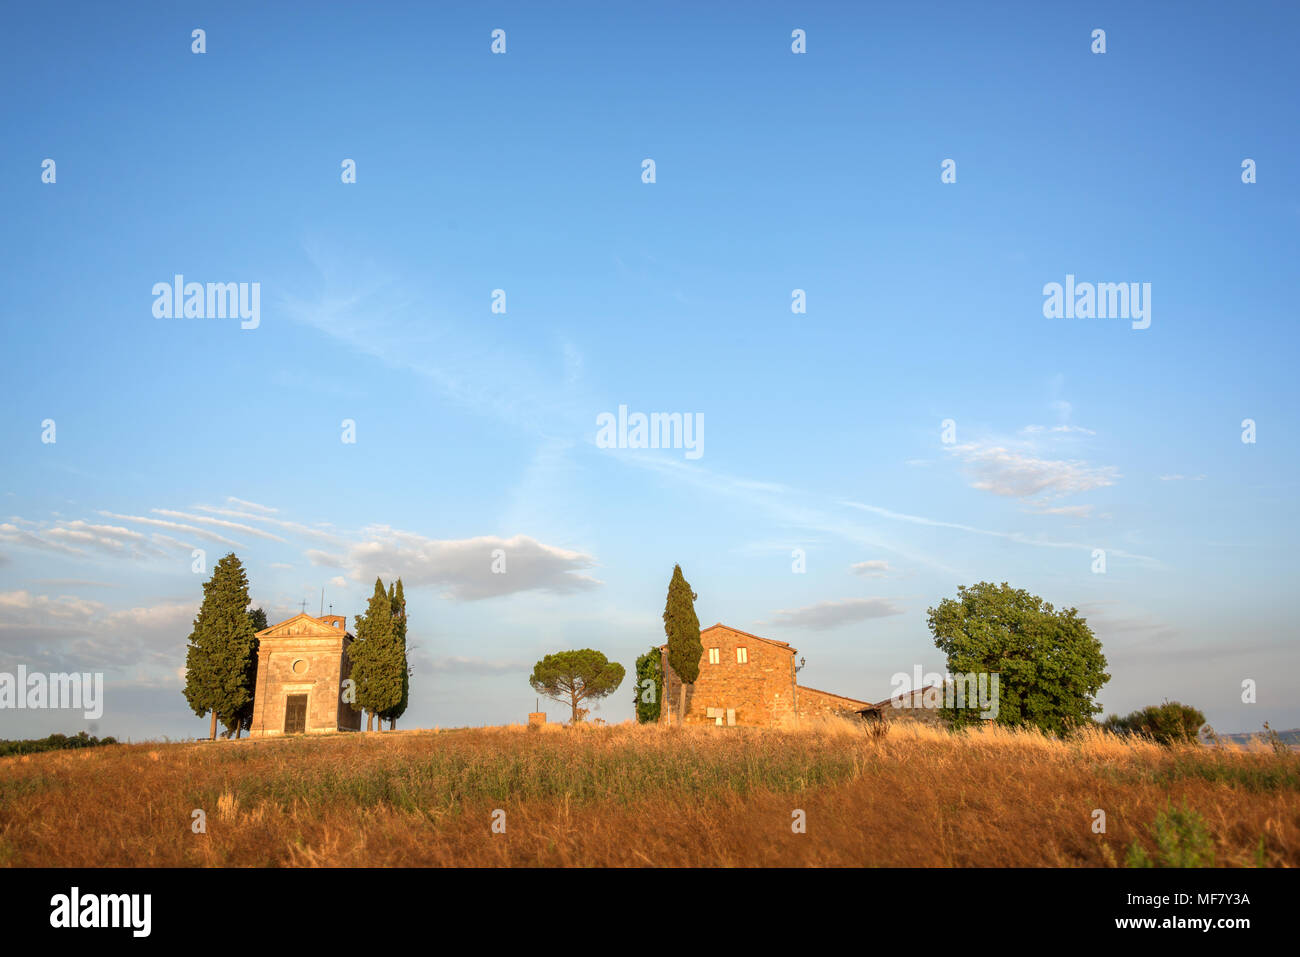 Vitaleta Chapel, Tuscan landscape near San Quirico d'Orcia, Siena, Tuscany, Italy Stock Photo